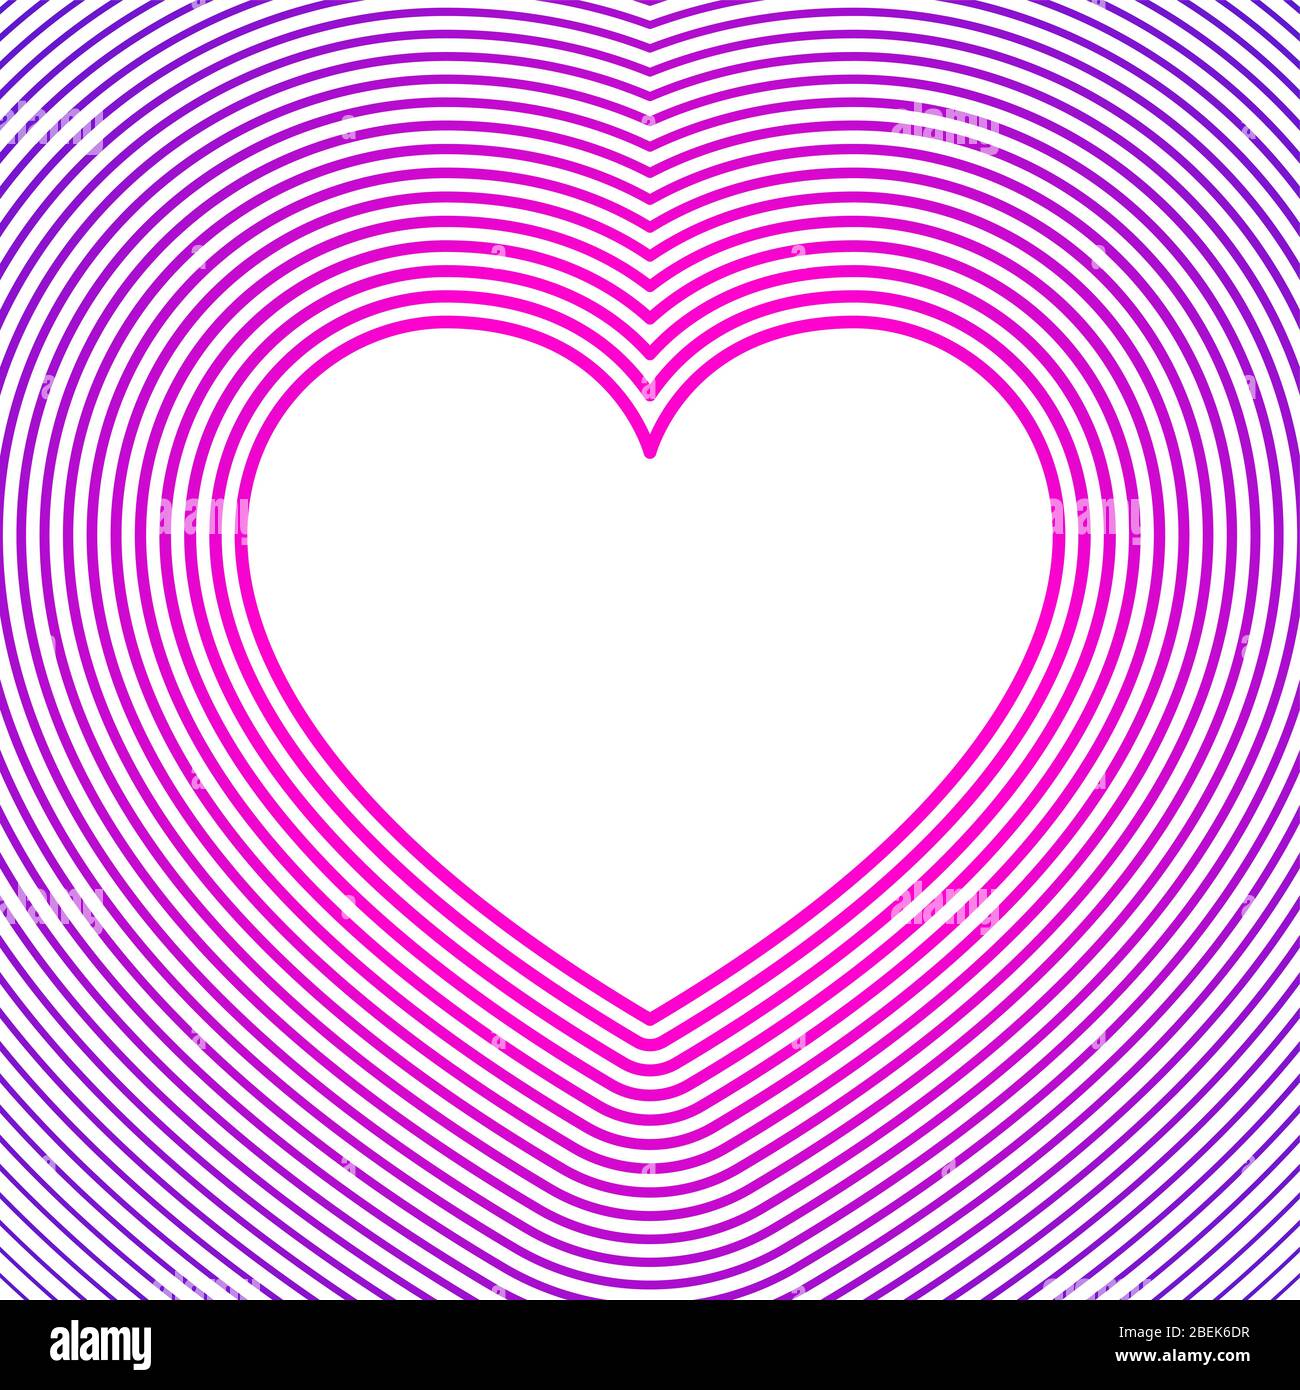 Símbolo de corazón blanco con líneas de compensación rosa y púrpura sobre fondo blanco. Plantilla para utilizar como fondo para tarjetas de felicitación. Forma del corazón. Foto de stock